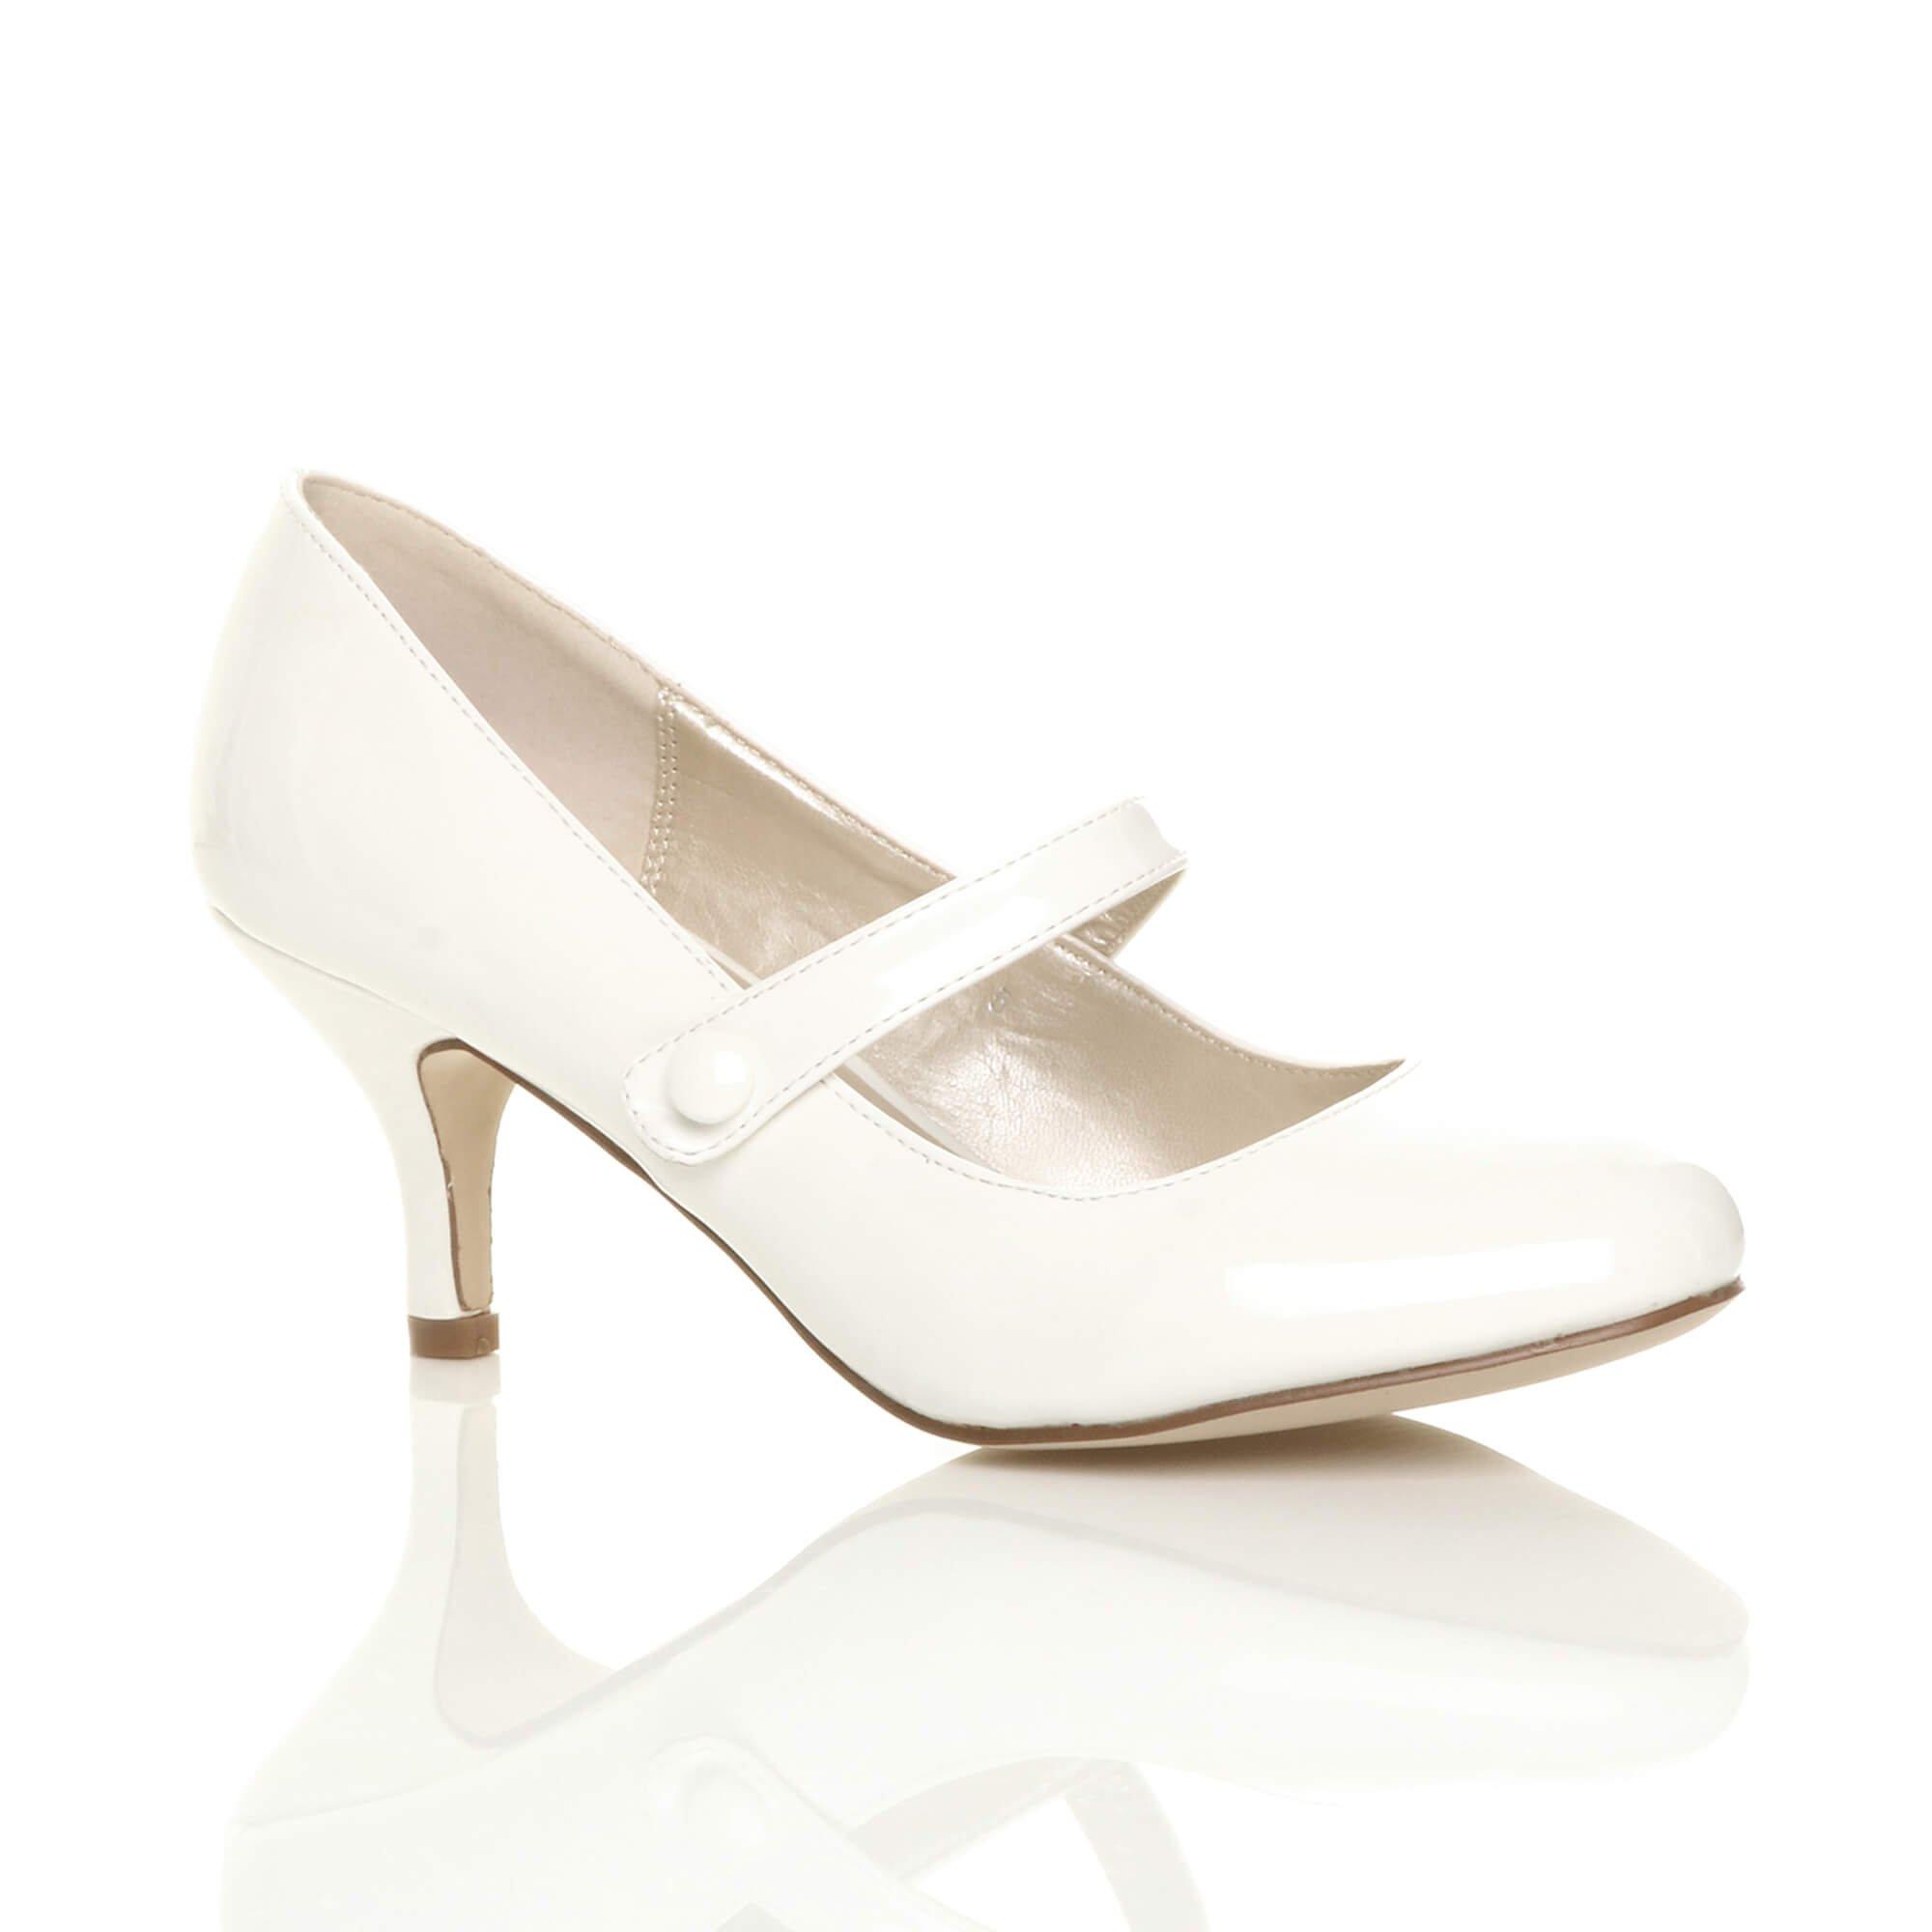 Лакированные туфли-лодочки Mary Jane на среднем каблуке AJVANI, белый туфли лодочки женские на платформе классические свадебные туфли мэри джейн средний каблук черные белые 2021